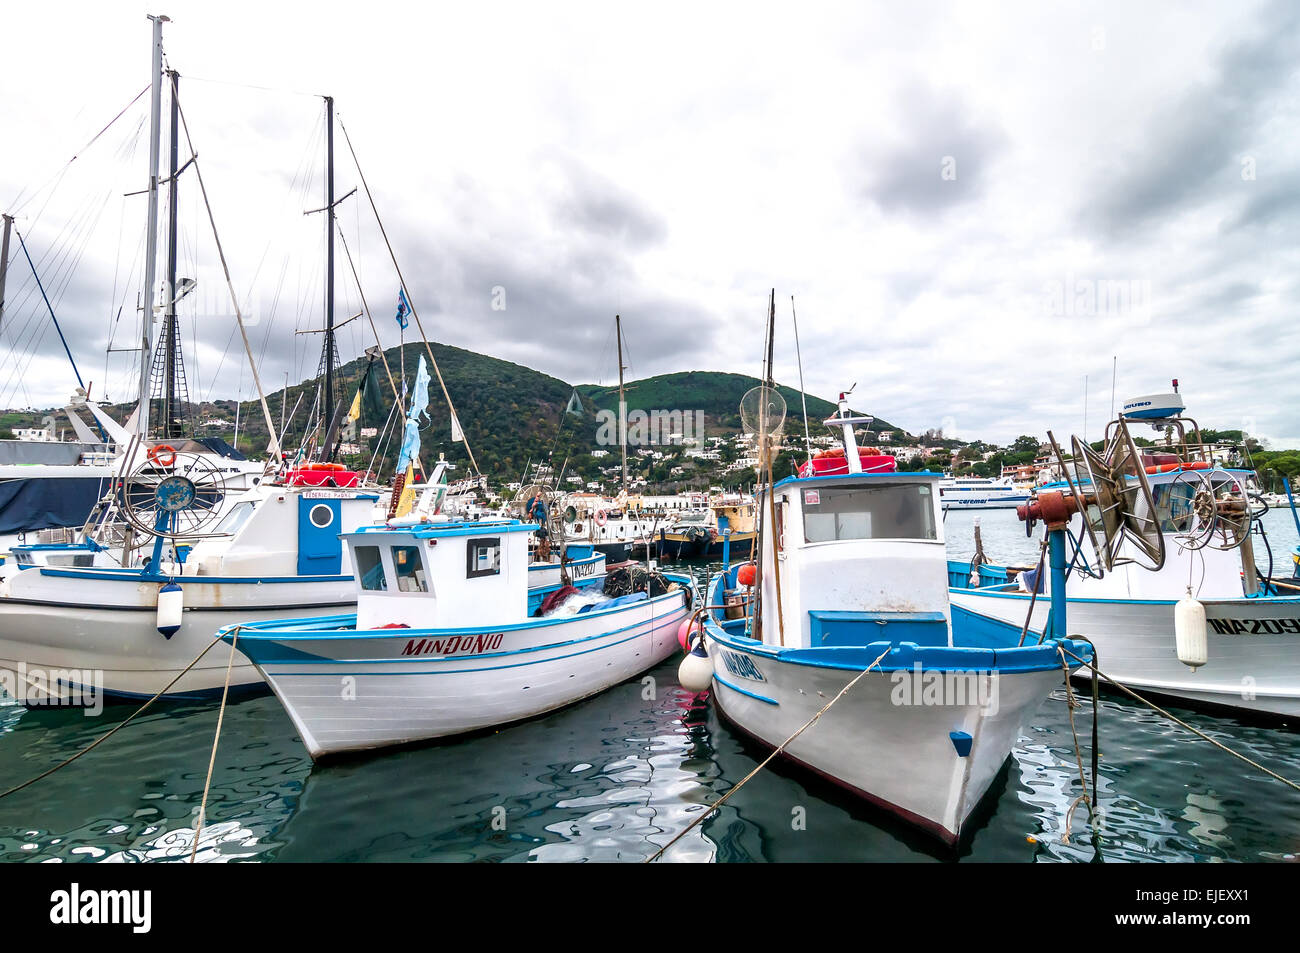 Ischia, Italien - 2. Januar 2014: Boote und Hafen auf der Insel Ischia, Italien. Auf der Insel Ischia liegt in den Golf von Neapel und famo Stockfoto